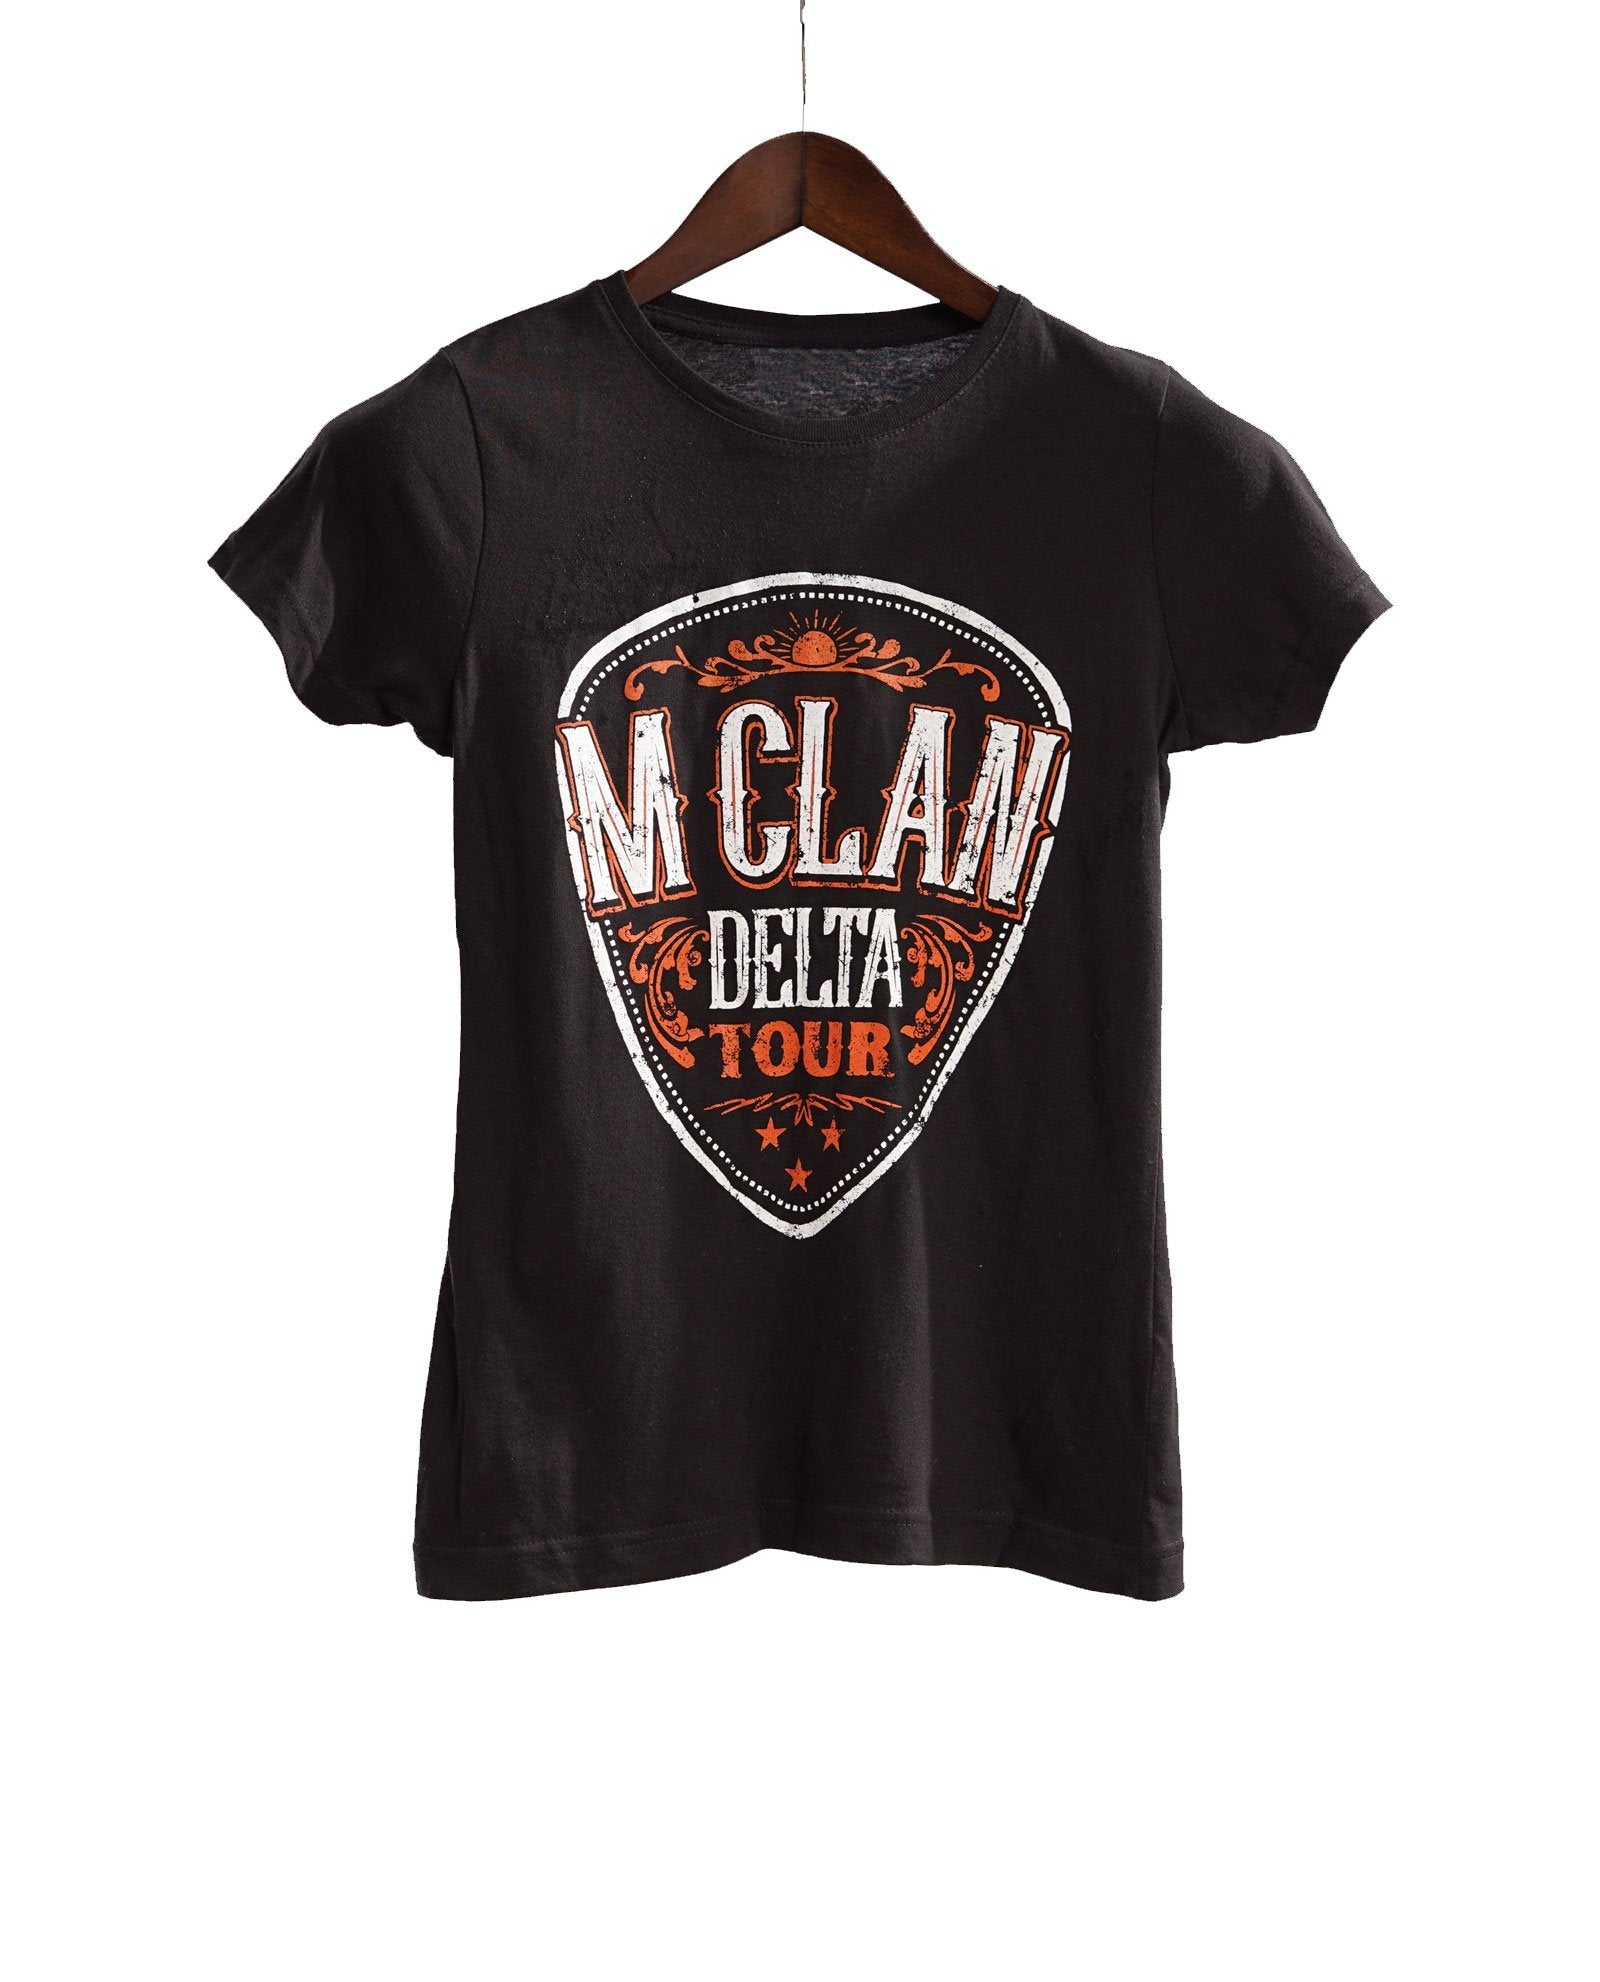 Camiseta M Clan - Delta Tour - Rocktud - m-clan